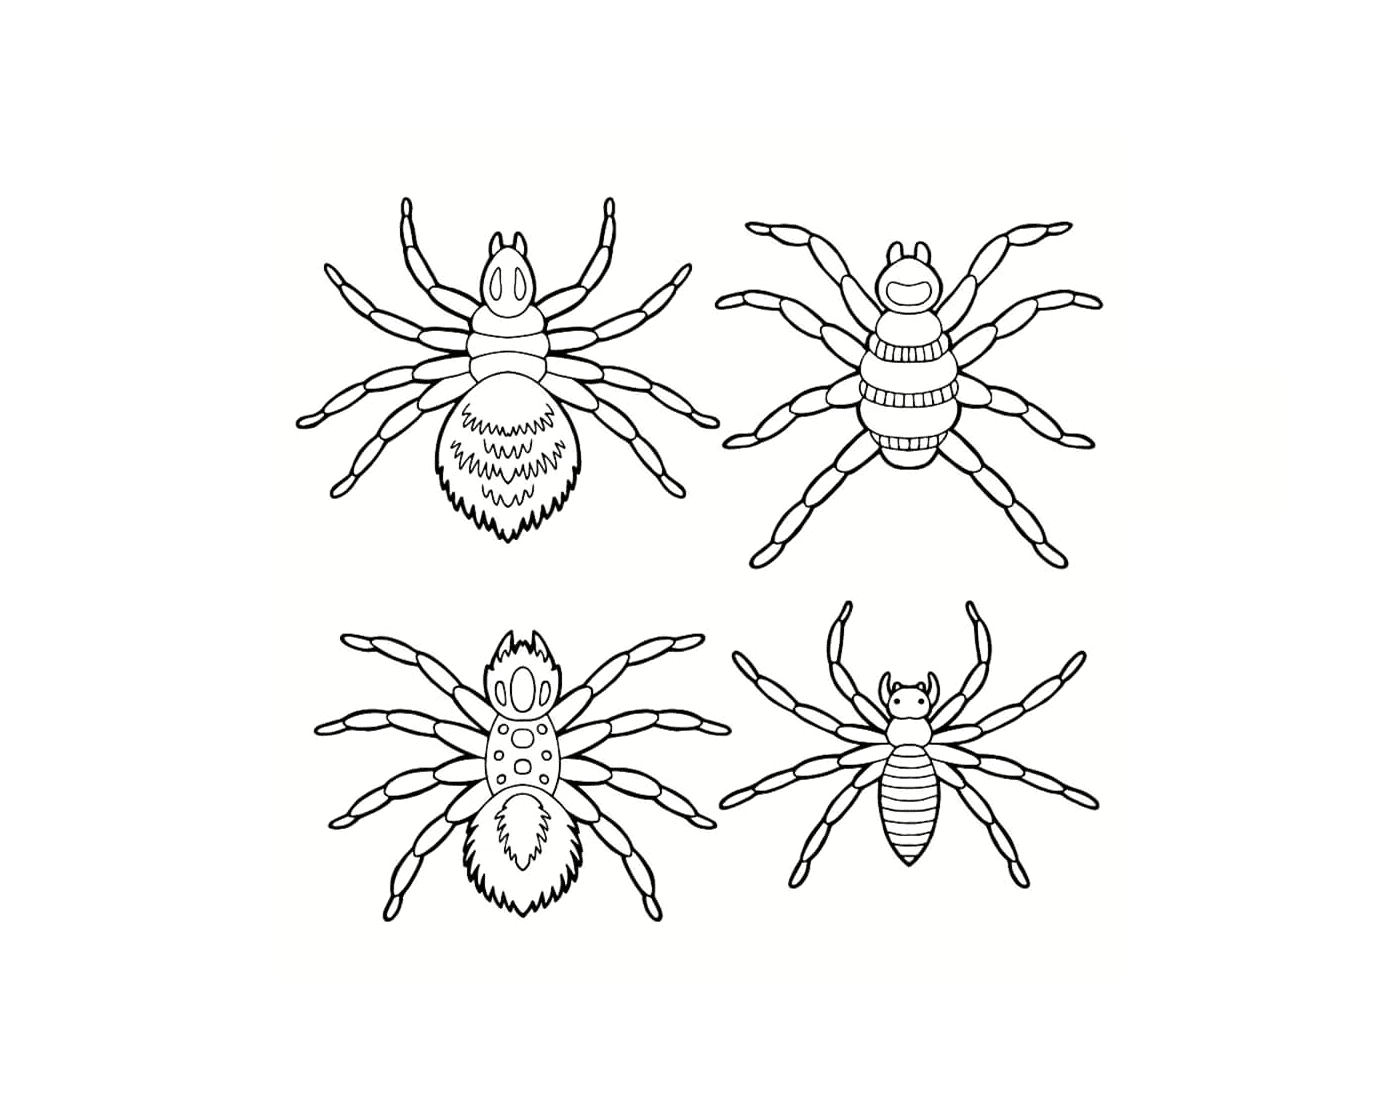  Un insieme di ragni diversi 